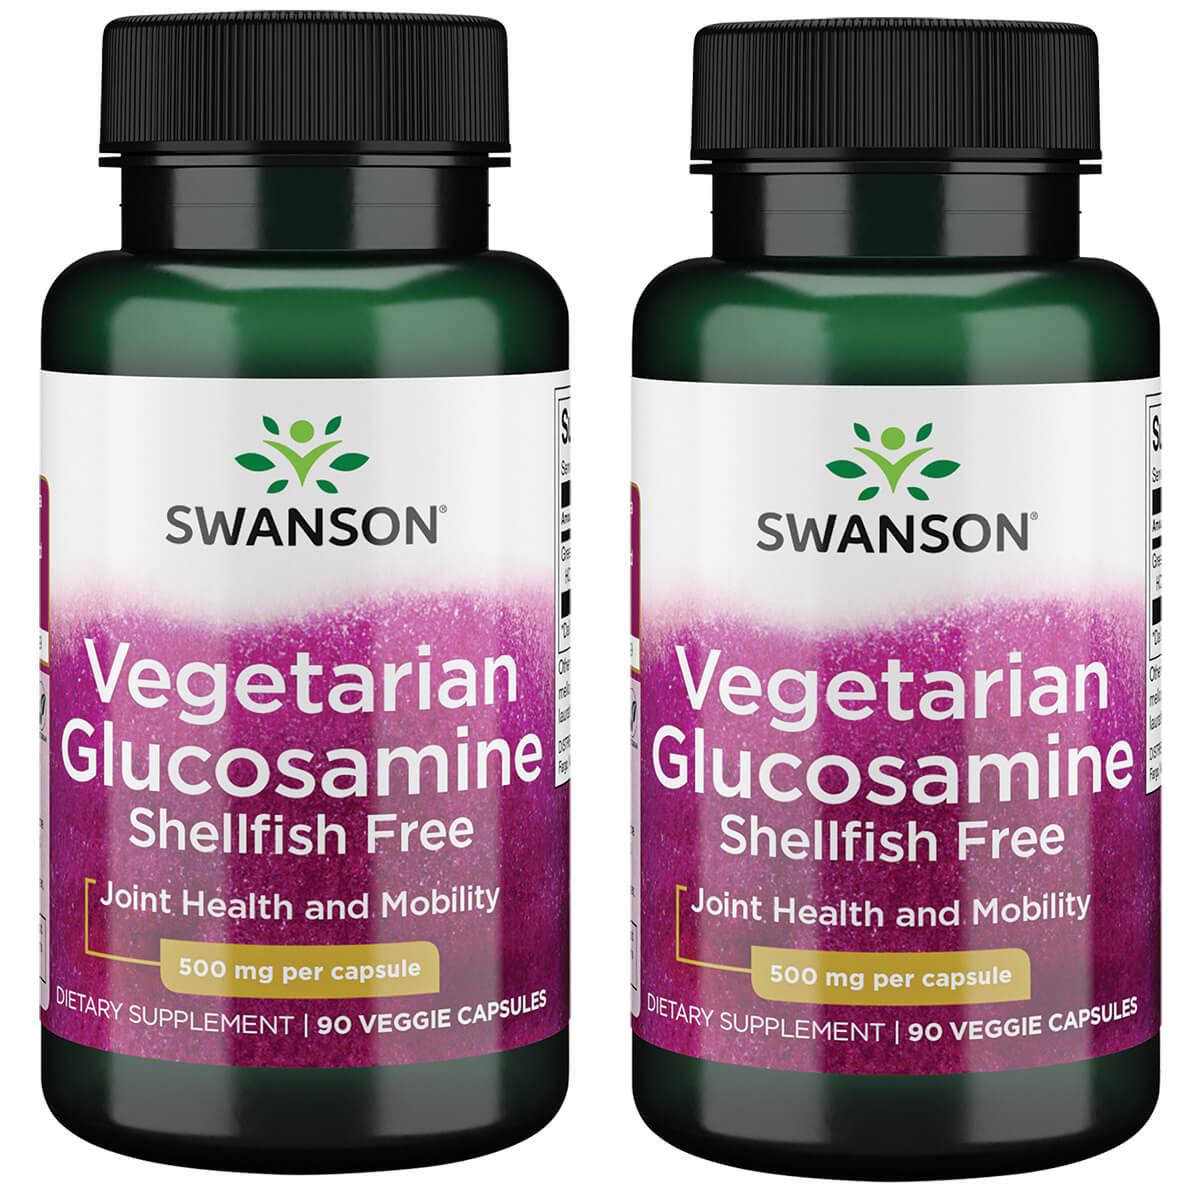 Swanson Ultra Vegetarian Glucosamine Shellfish Free 2 Pack Supplement Vitamin 500 mg 90 Veg Caps